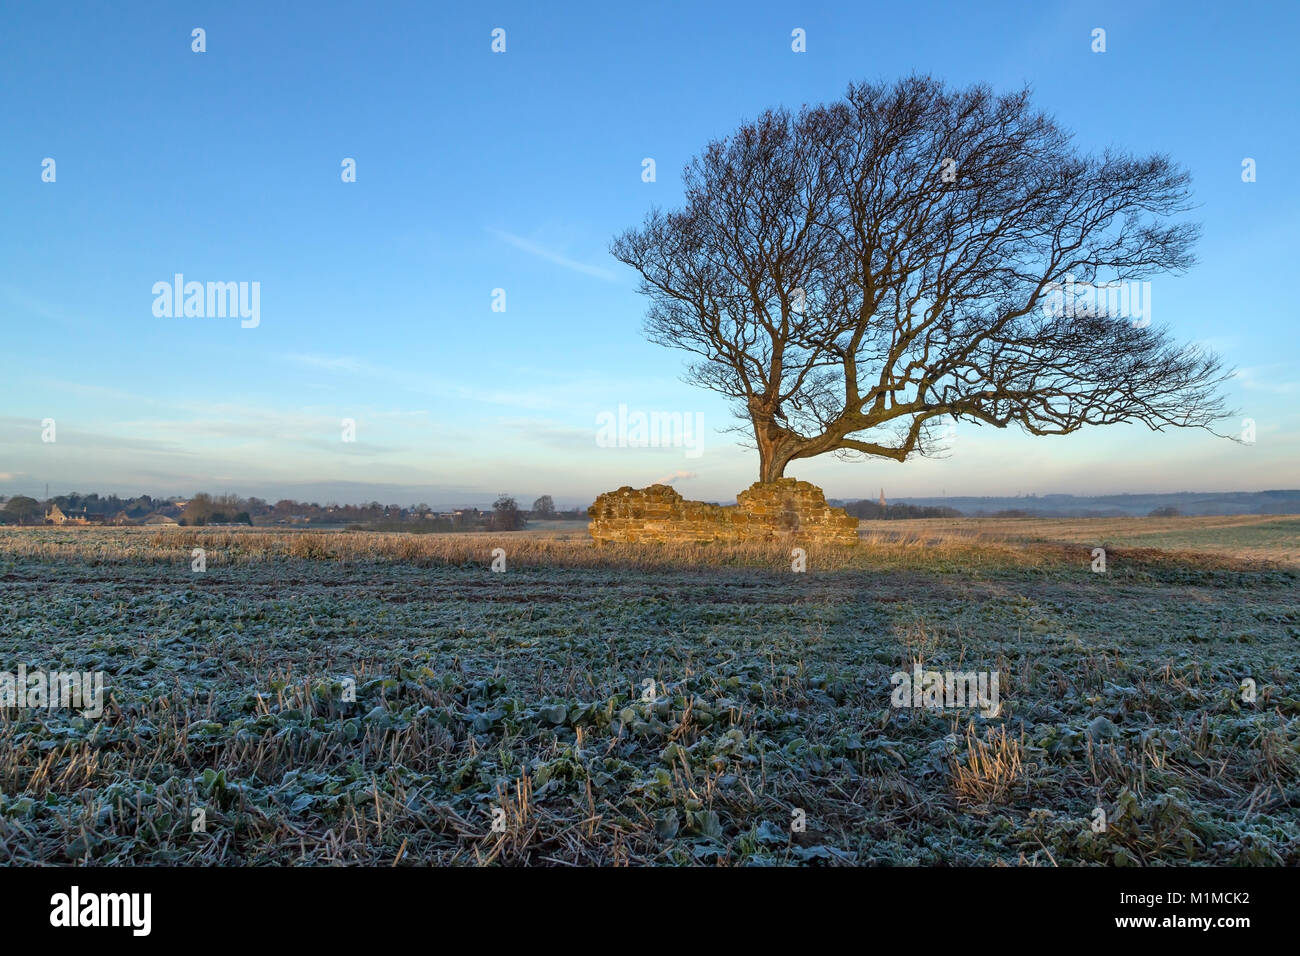 Imagen de un árbol y un antiguo muro de piedra en el sol de la mañana, en una helada mañana. Foto de stock